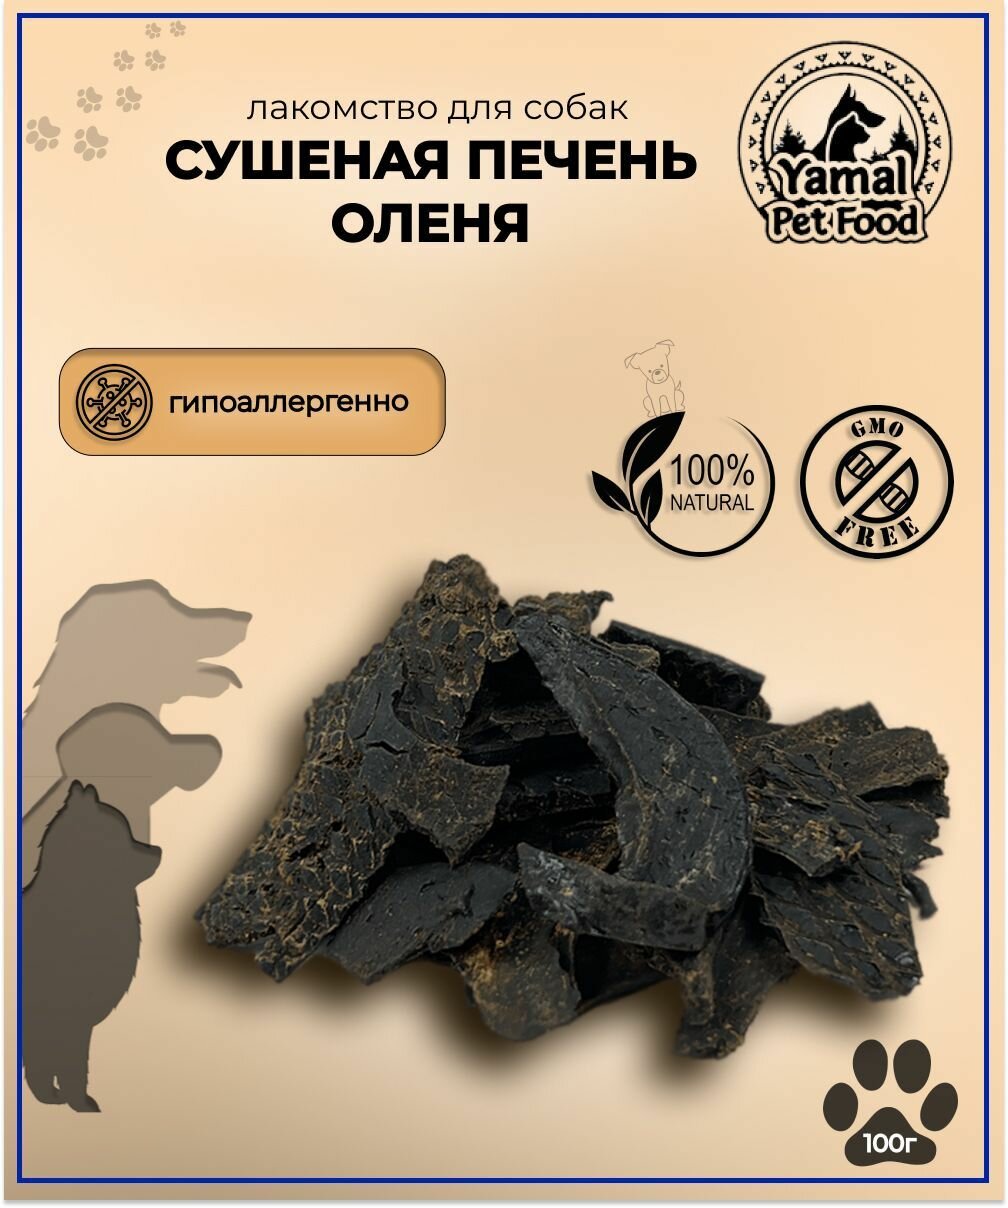 Лакомство для собак "Сушеная печень северного оленя", 100 гр.